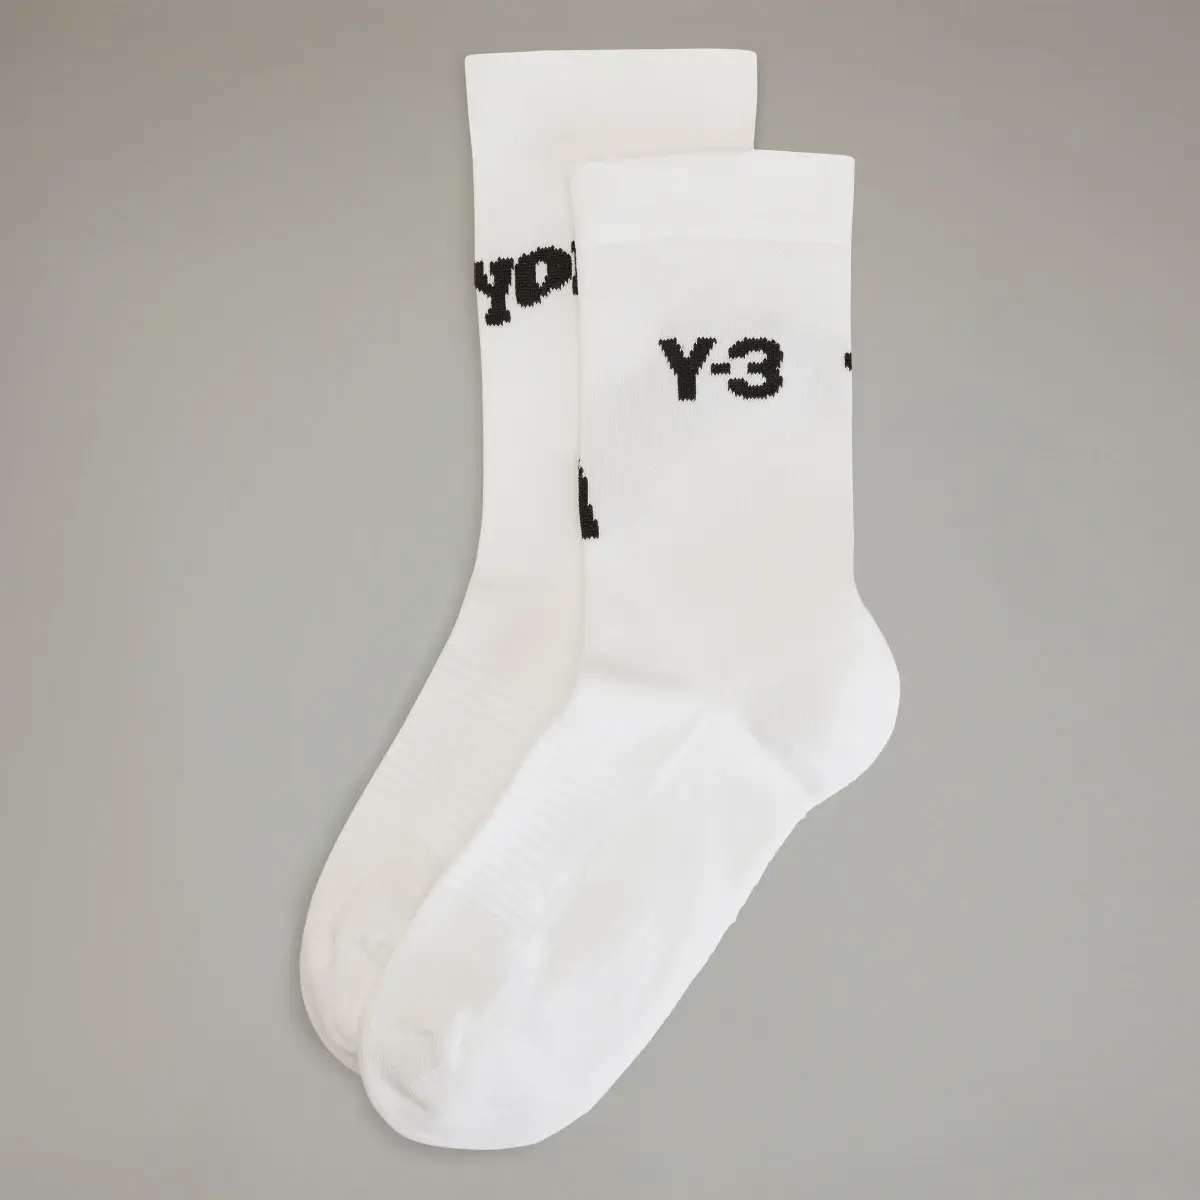 Adidas Y-3 Crew Socks. 2